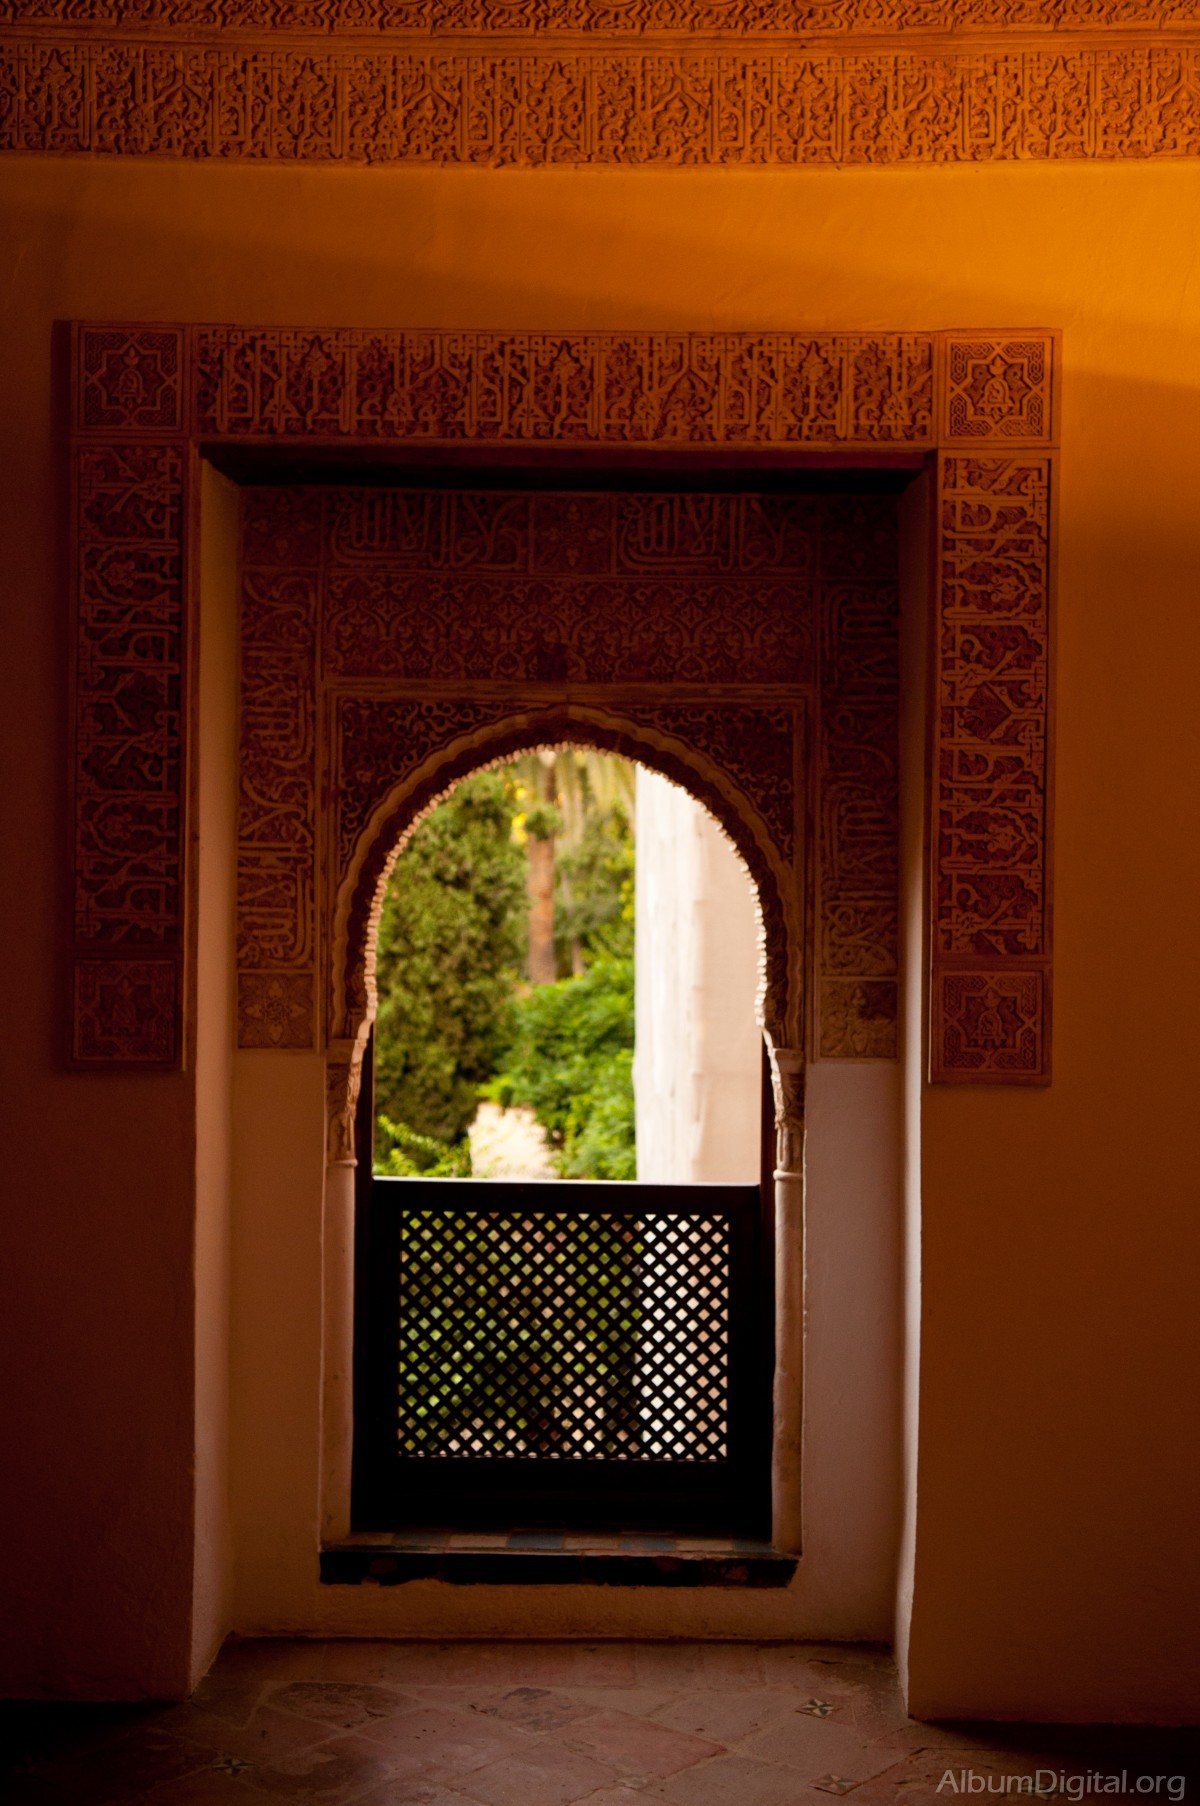 Balcon de la Alhambra